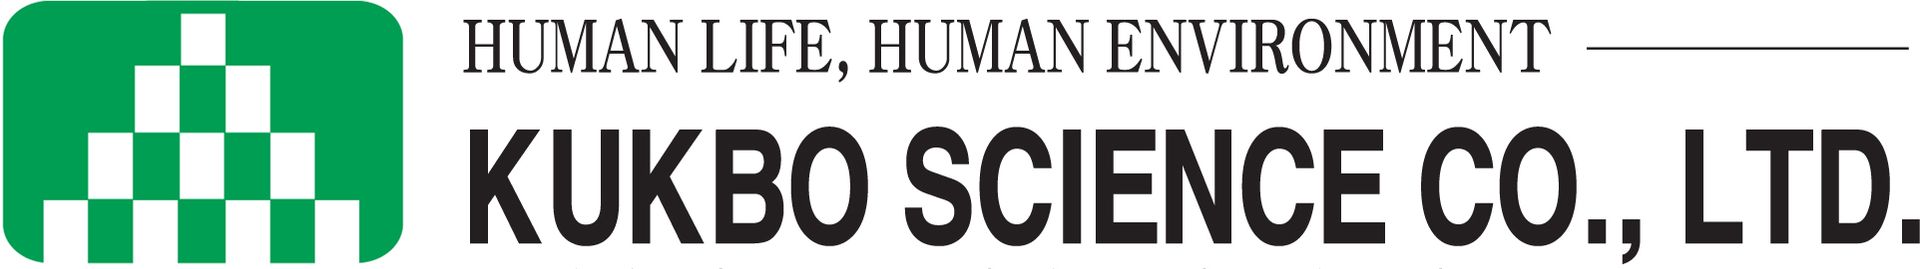 Kukbo Science Co., Ltd. logo